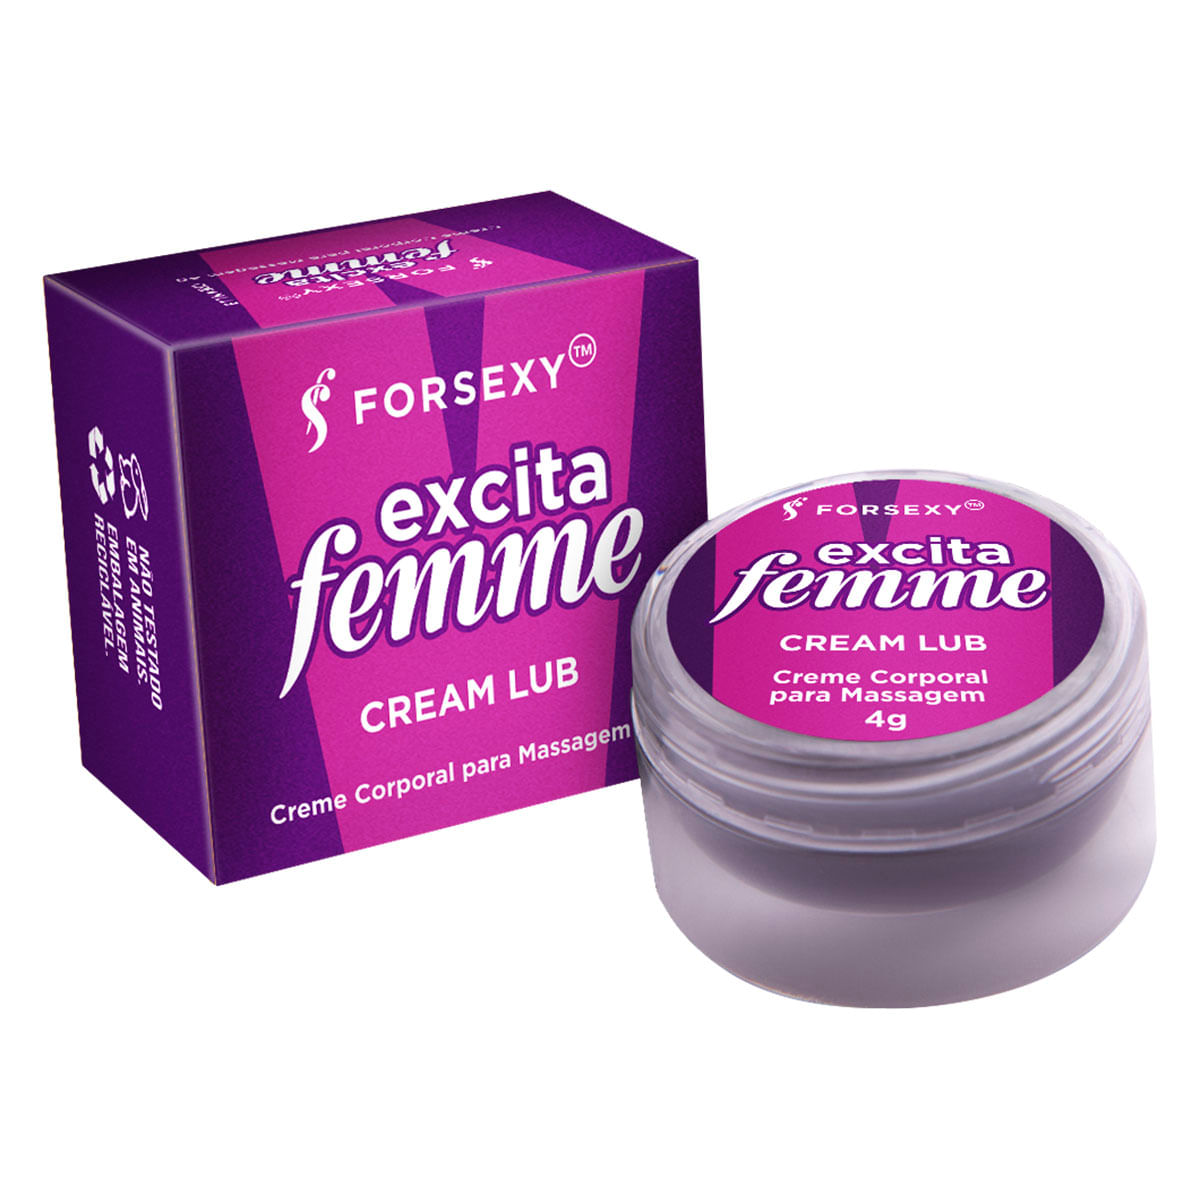 Excita Femme Excitante Feminino Esquenta Cream Lub 4g For Sexy